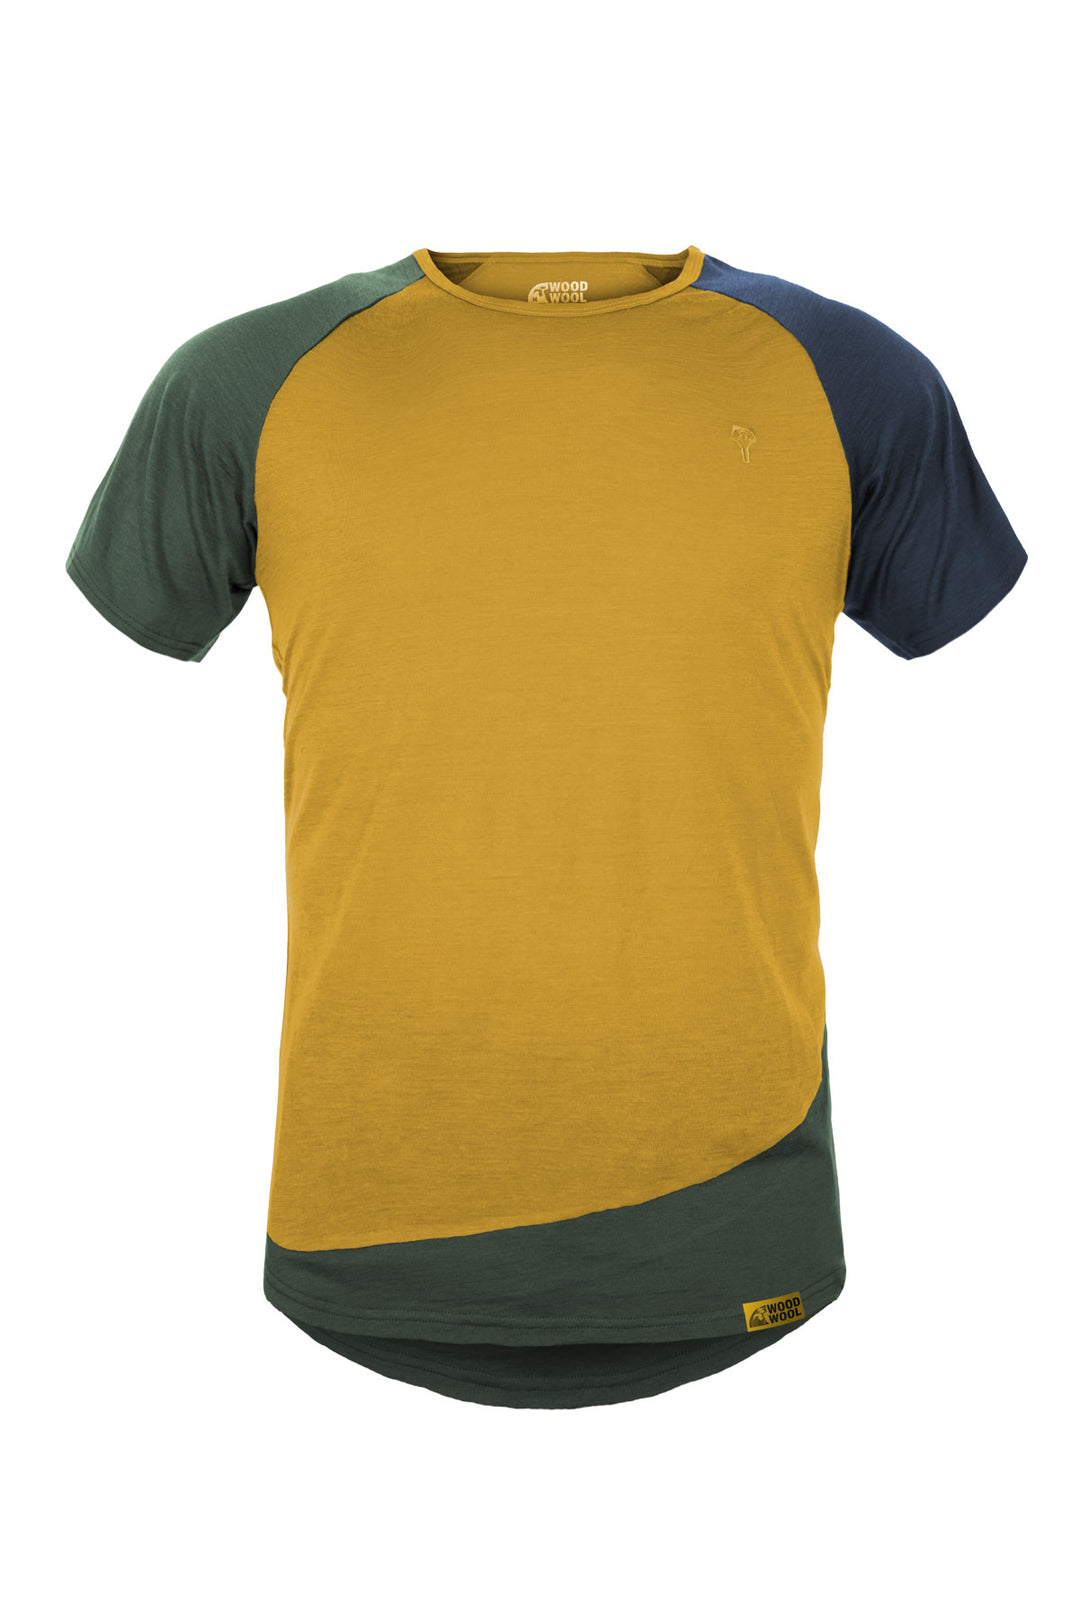 WoodWool T-Shirt Mr. Kirk - Daisy Daze Yellow